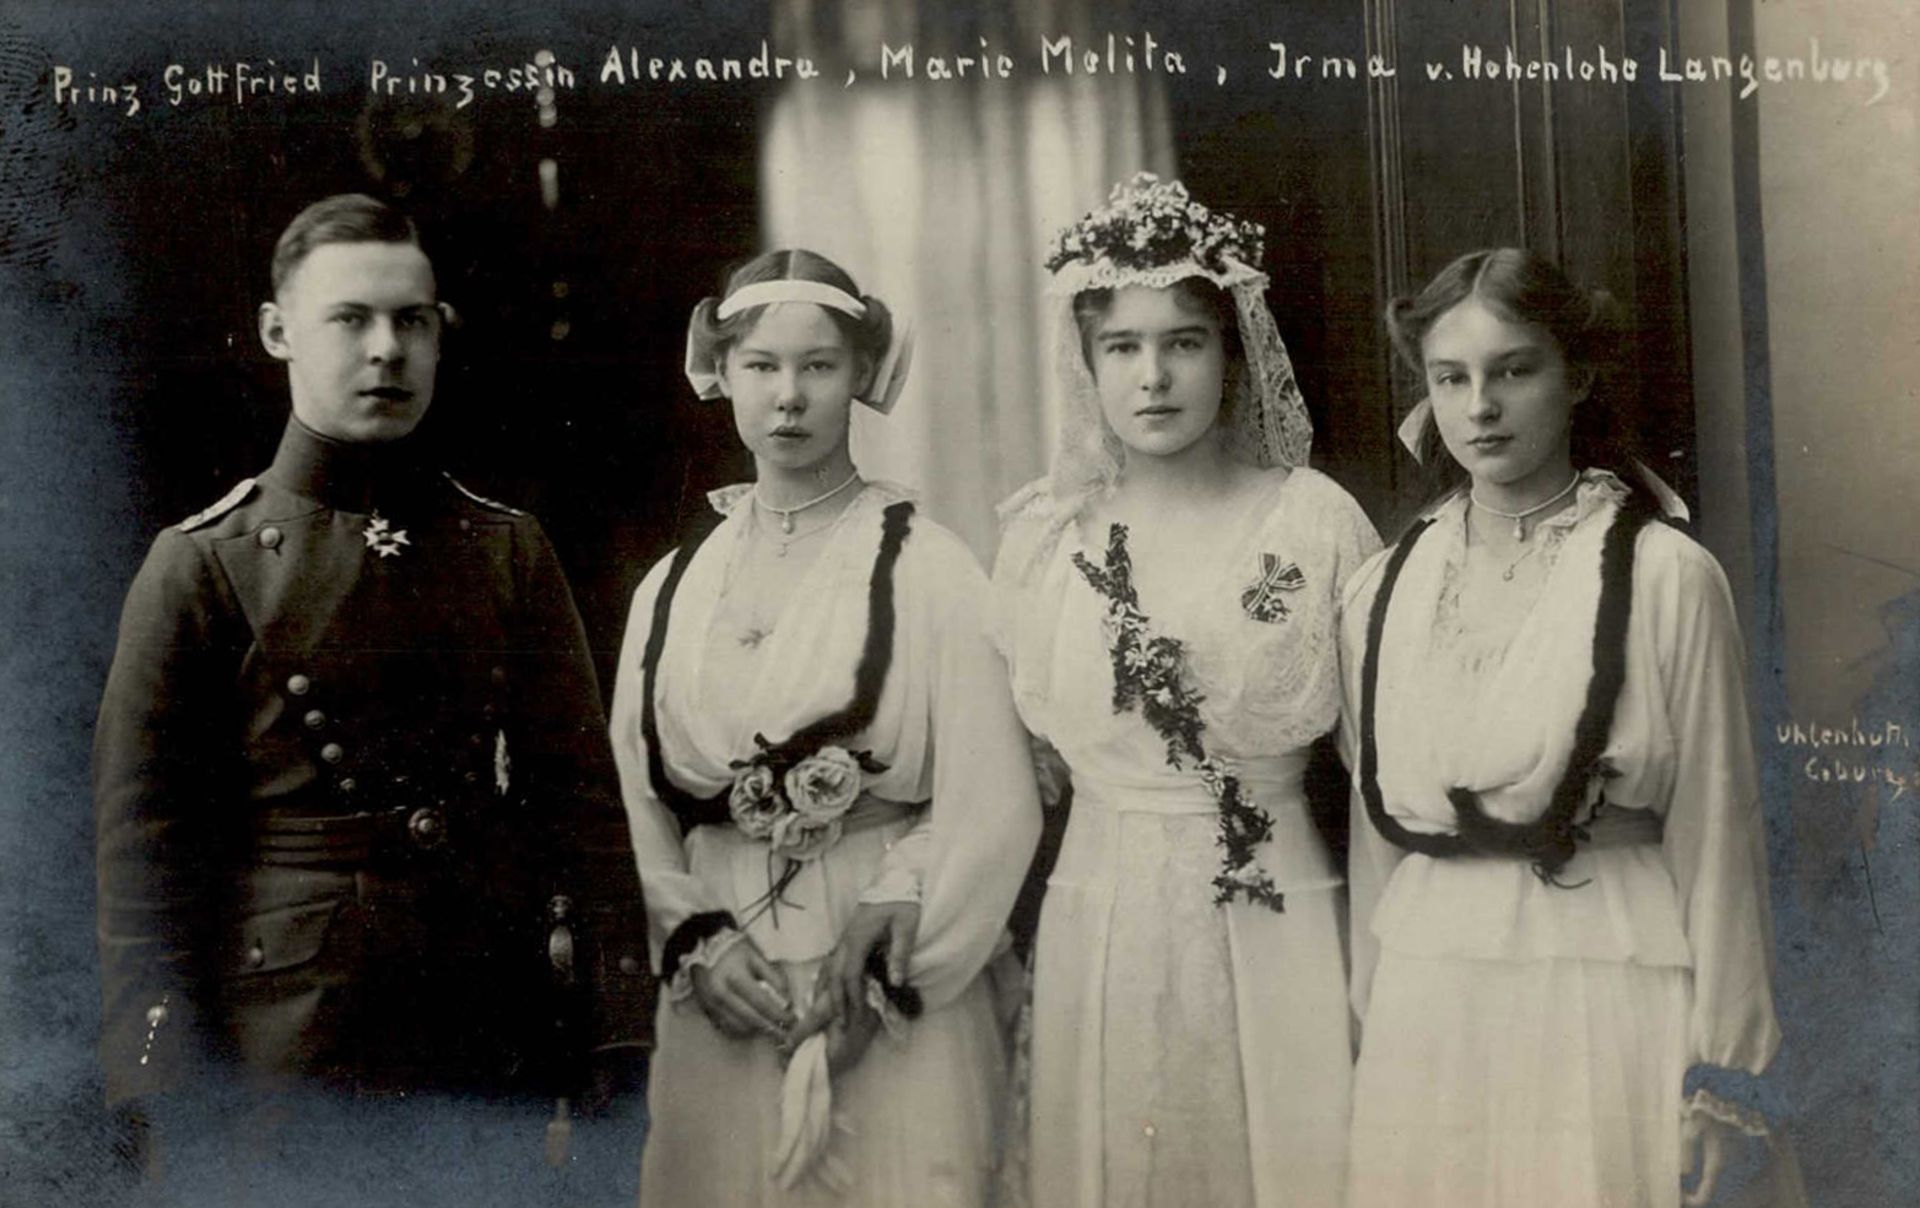 Adel Hohenlohe-Langenburg Prinz Gottfried mit den Prinzessinen Alexandra, Marie Melitta und Irma I-